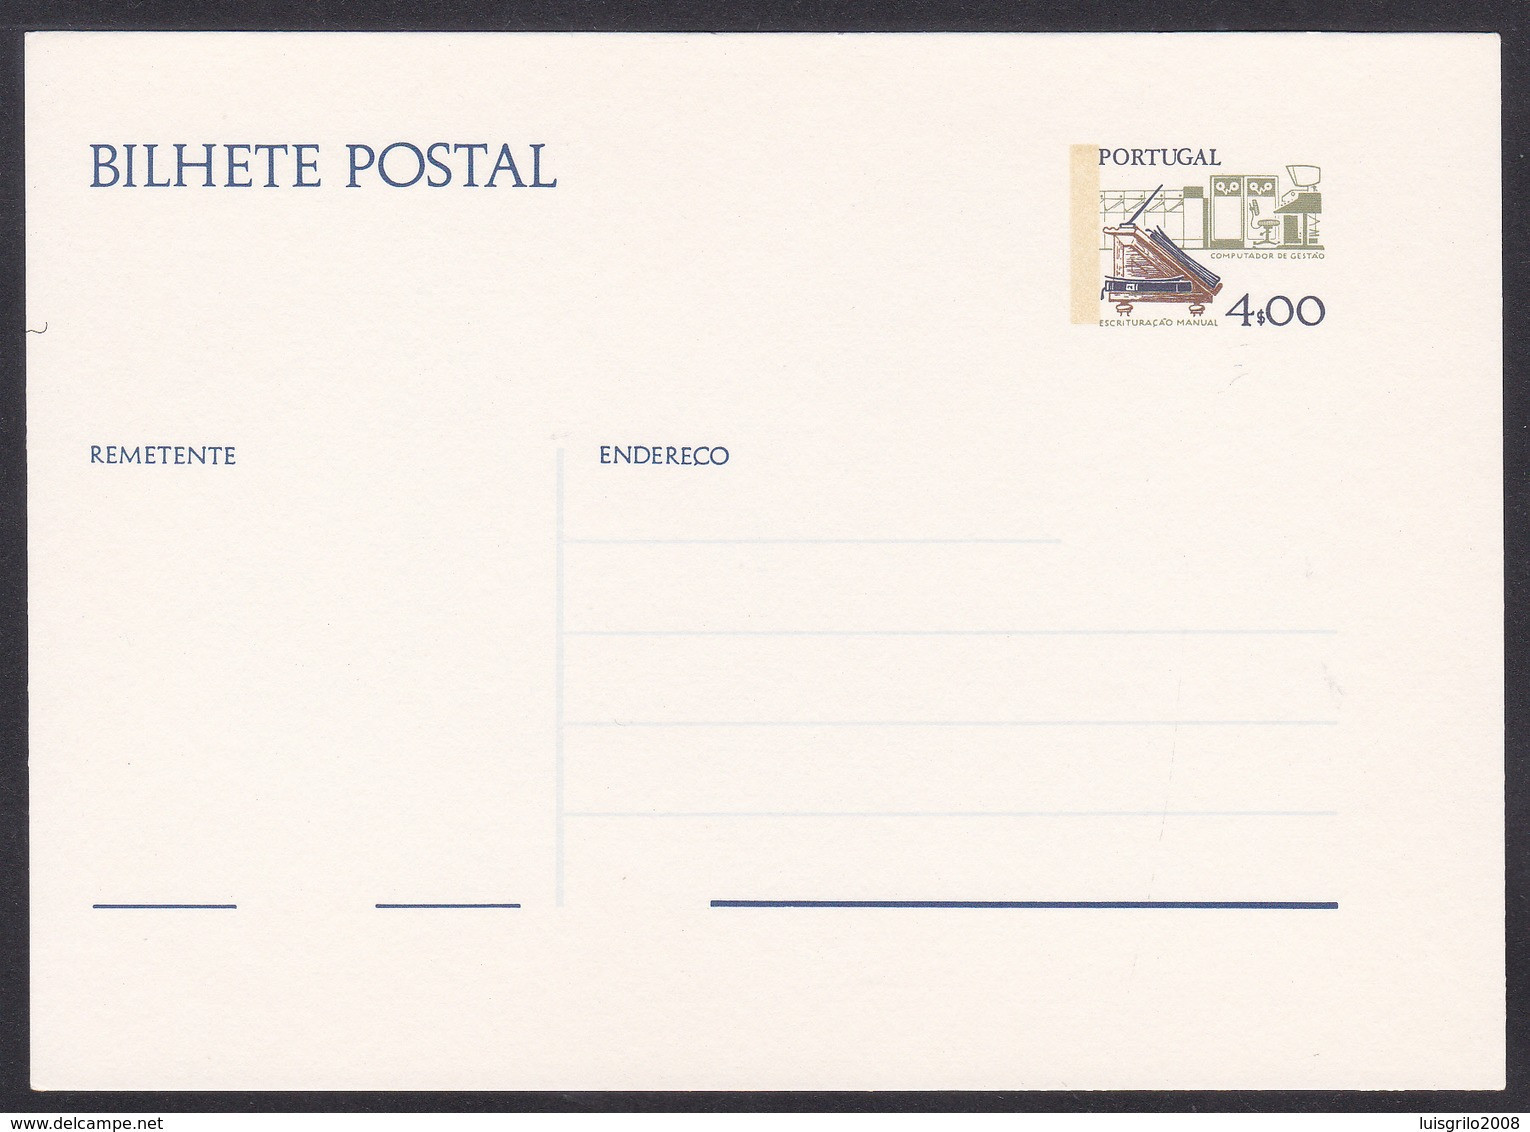 Postal Stationery/ Bilhete Postal Portugal - Instrumentos De Trabalho 4$00 - Briefe U. Dokumente